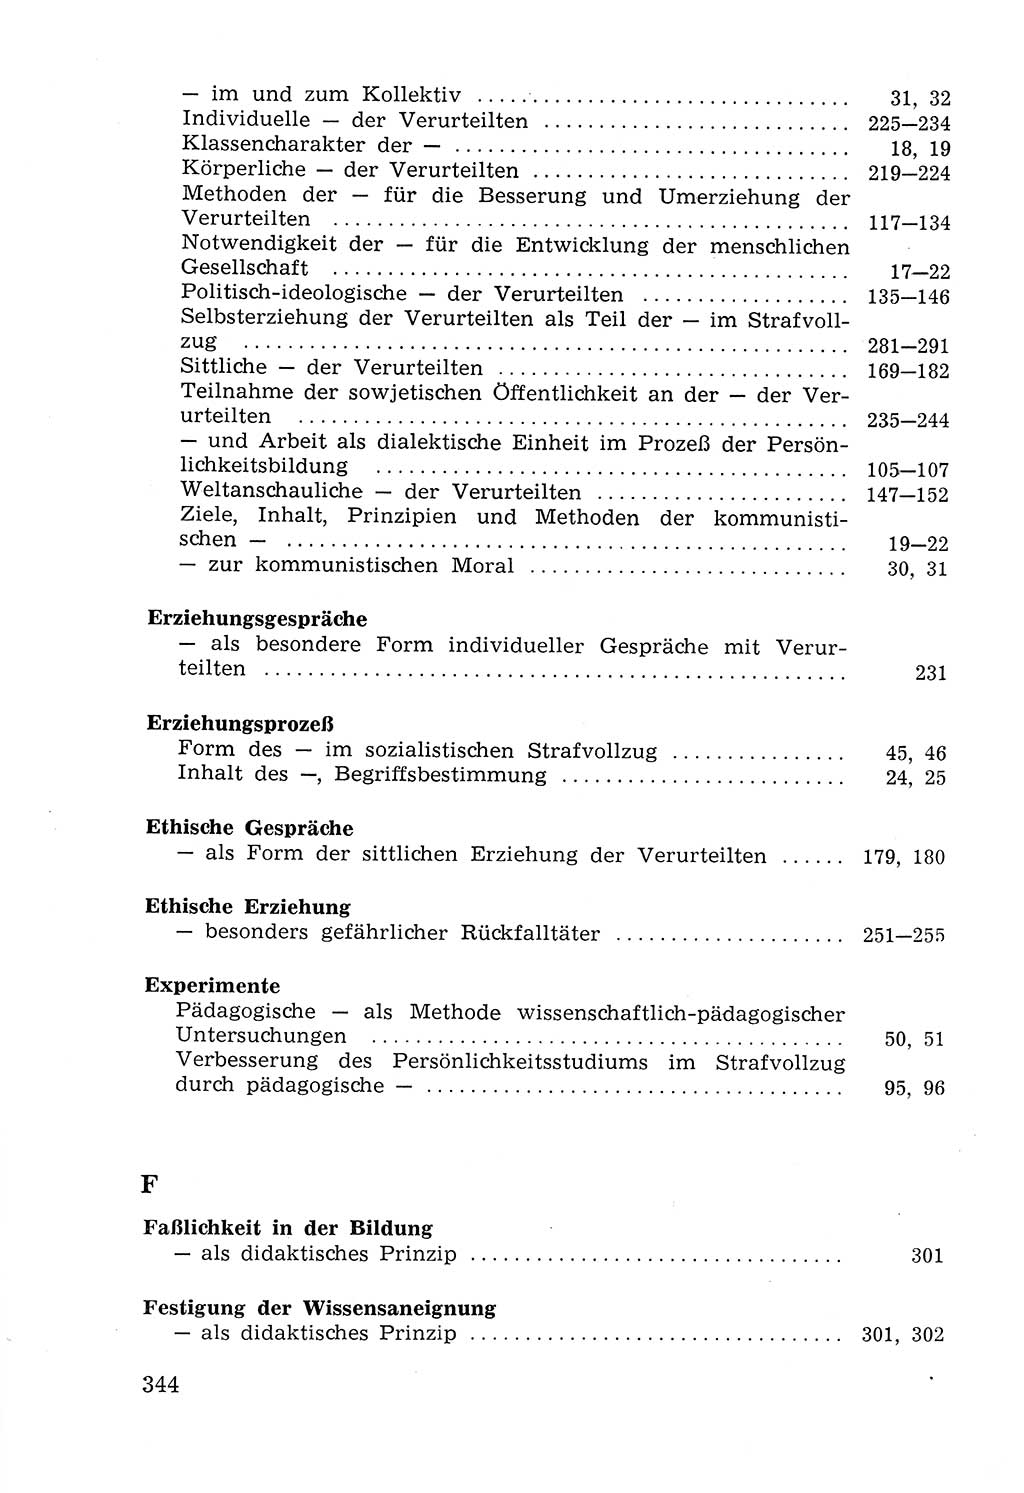 Lehrbuch der Strafvollzugspädagogik [Deutsche Demokratische Republik (DDR)] 1969, Seite 344 (Lb. SV-Pd. DDR 1969, S. 344)